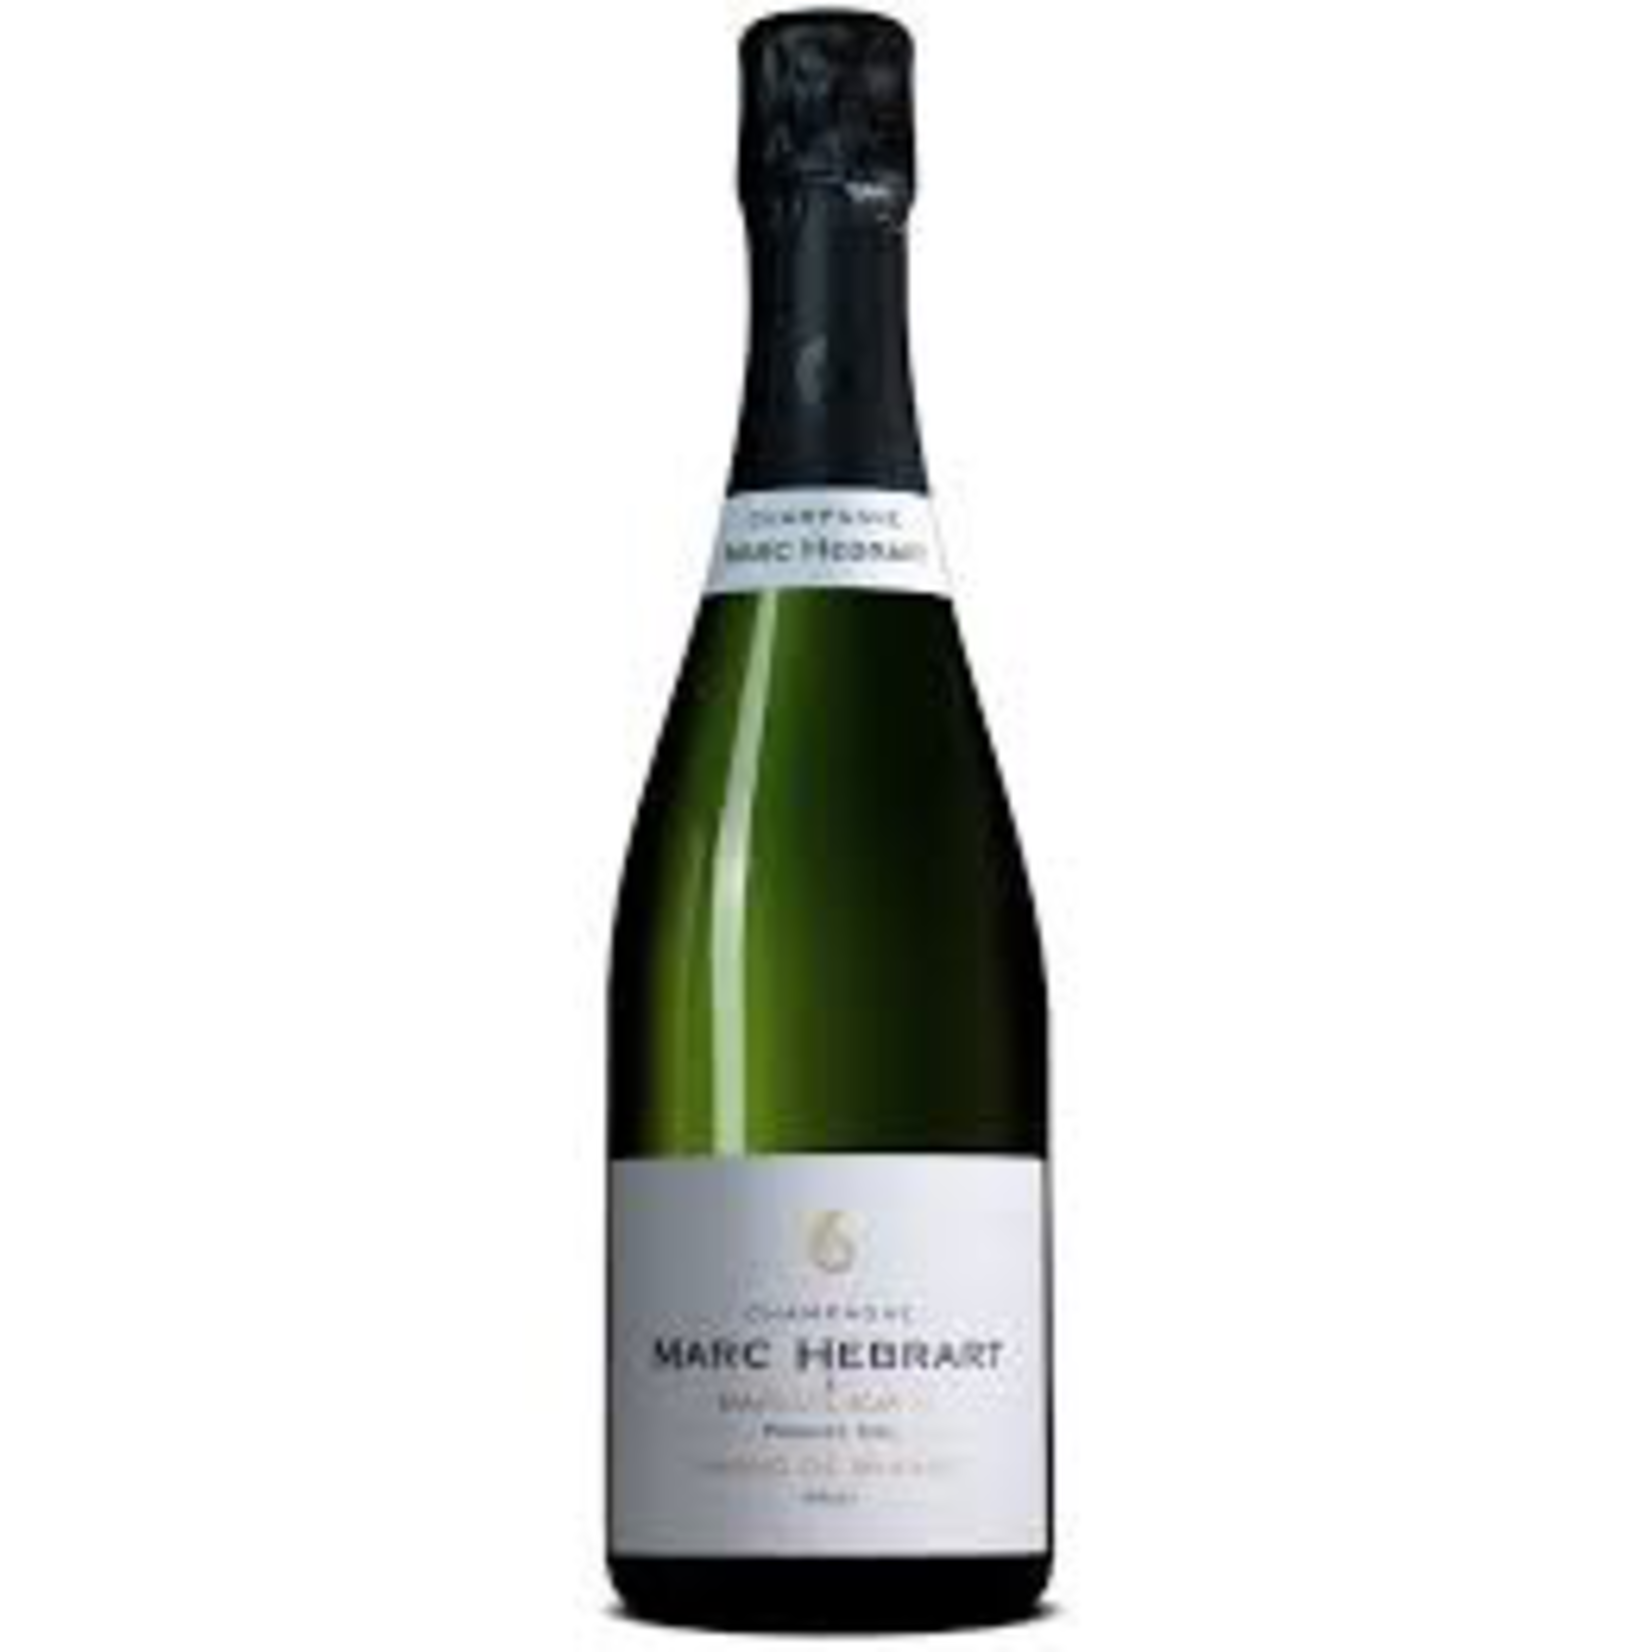 Sparkling Marc Hebrart Champagne Cuvee de Reserve Brut Premier Cru Selection